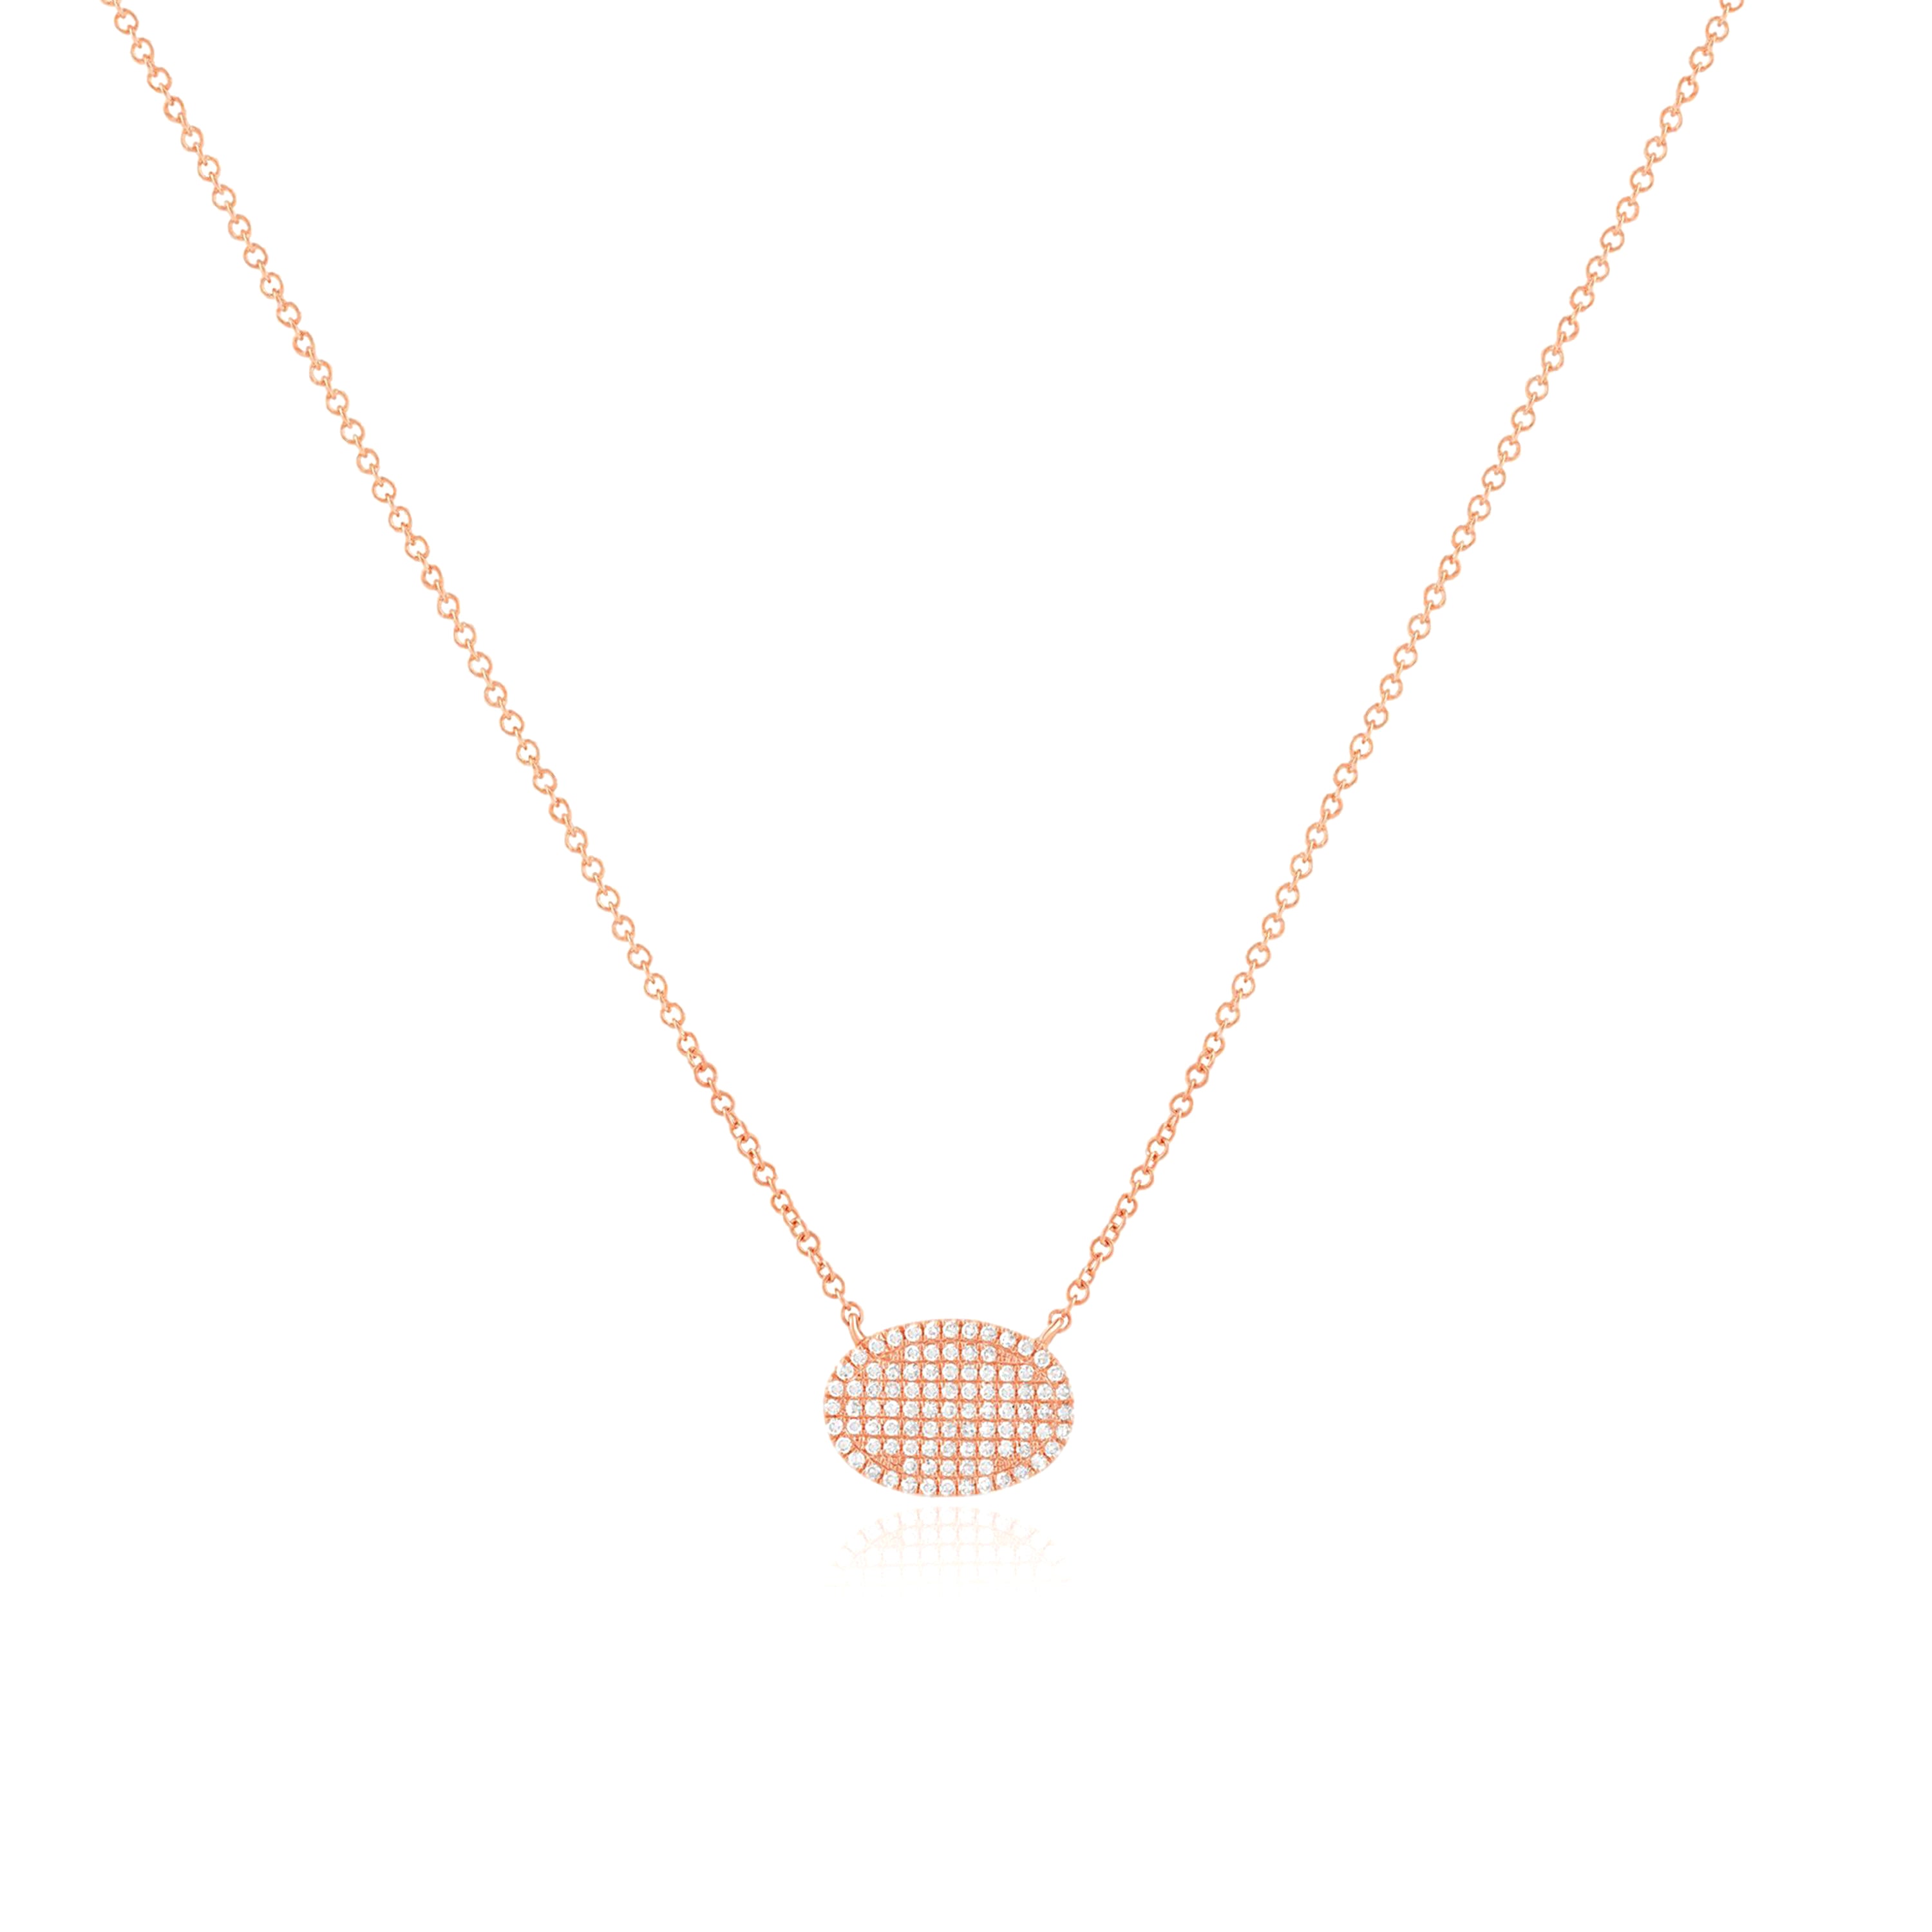 Oval Diamond Pavé Station Necklace Necklaces Estella Collection #product_description# 17707 14k Diamond Gemstone #tag4# #tag5# #tag6# #tag7# #tag8# #tag9# #tag10#